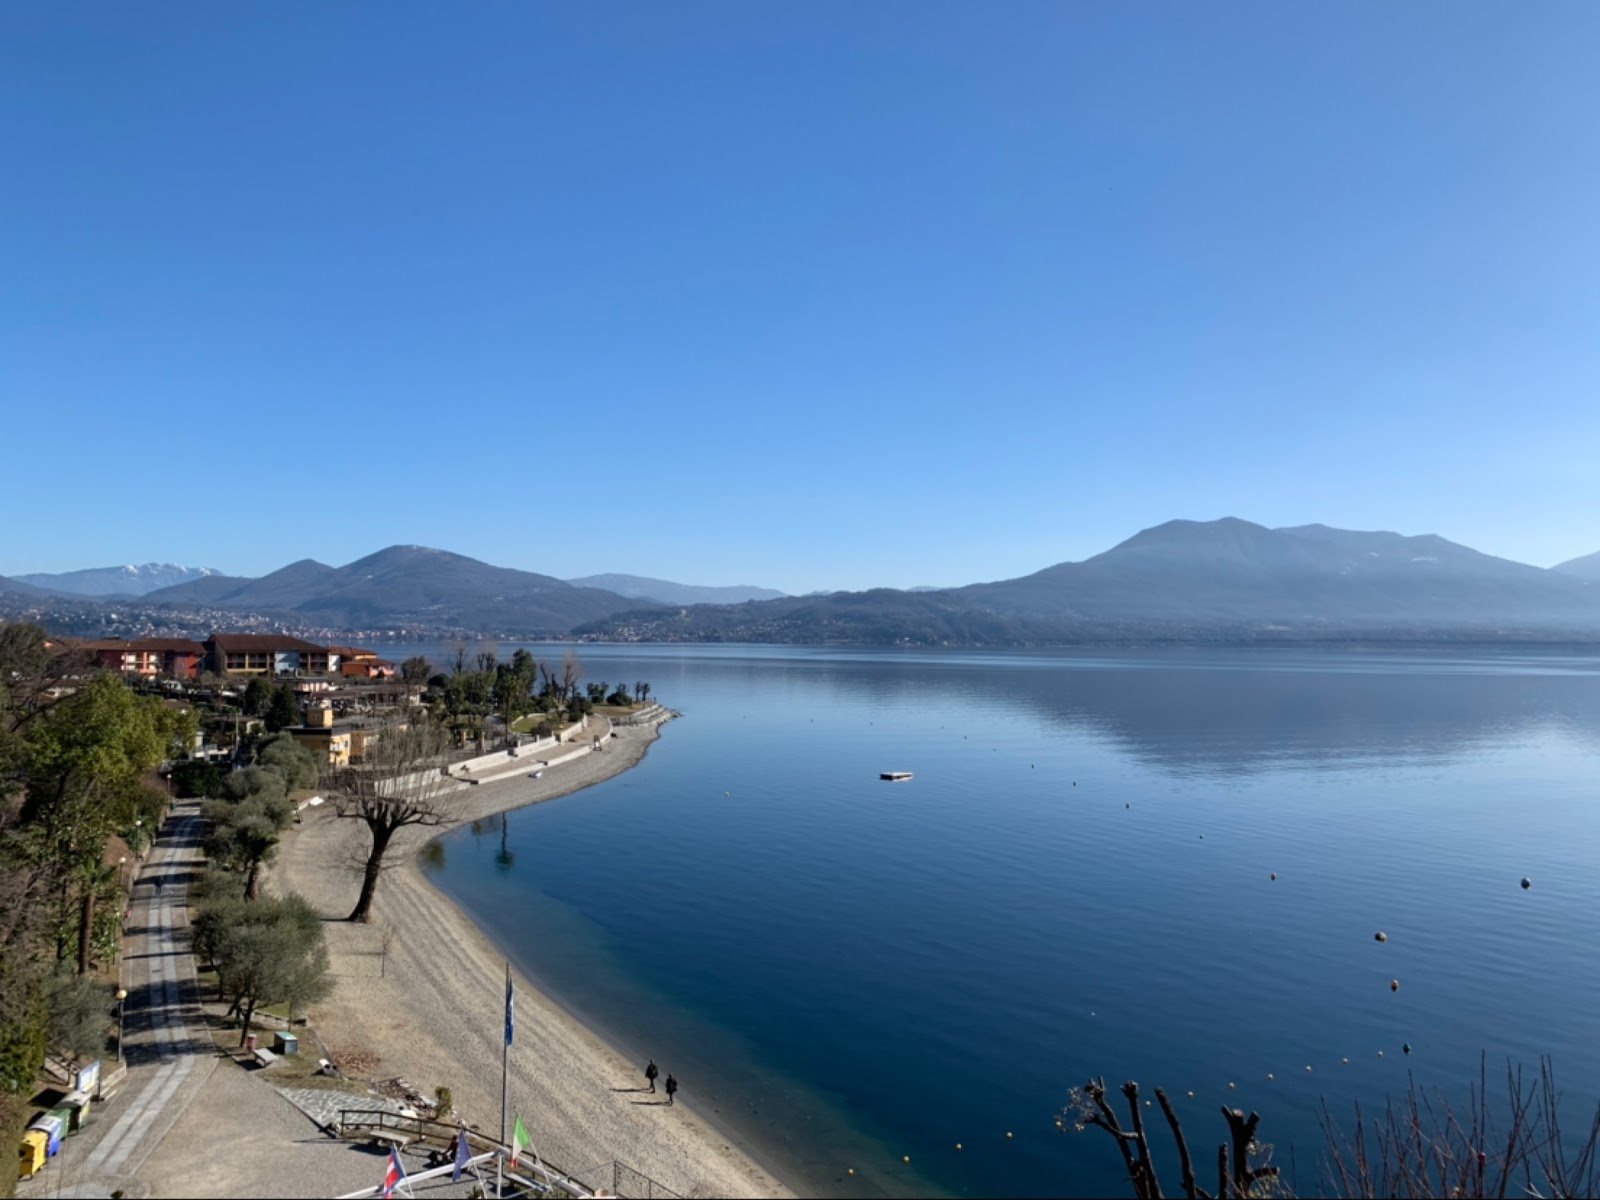 Foto af Spiaggia di Cannero - populært sted blandt afslapningskendere